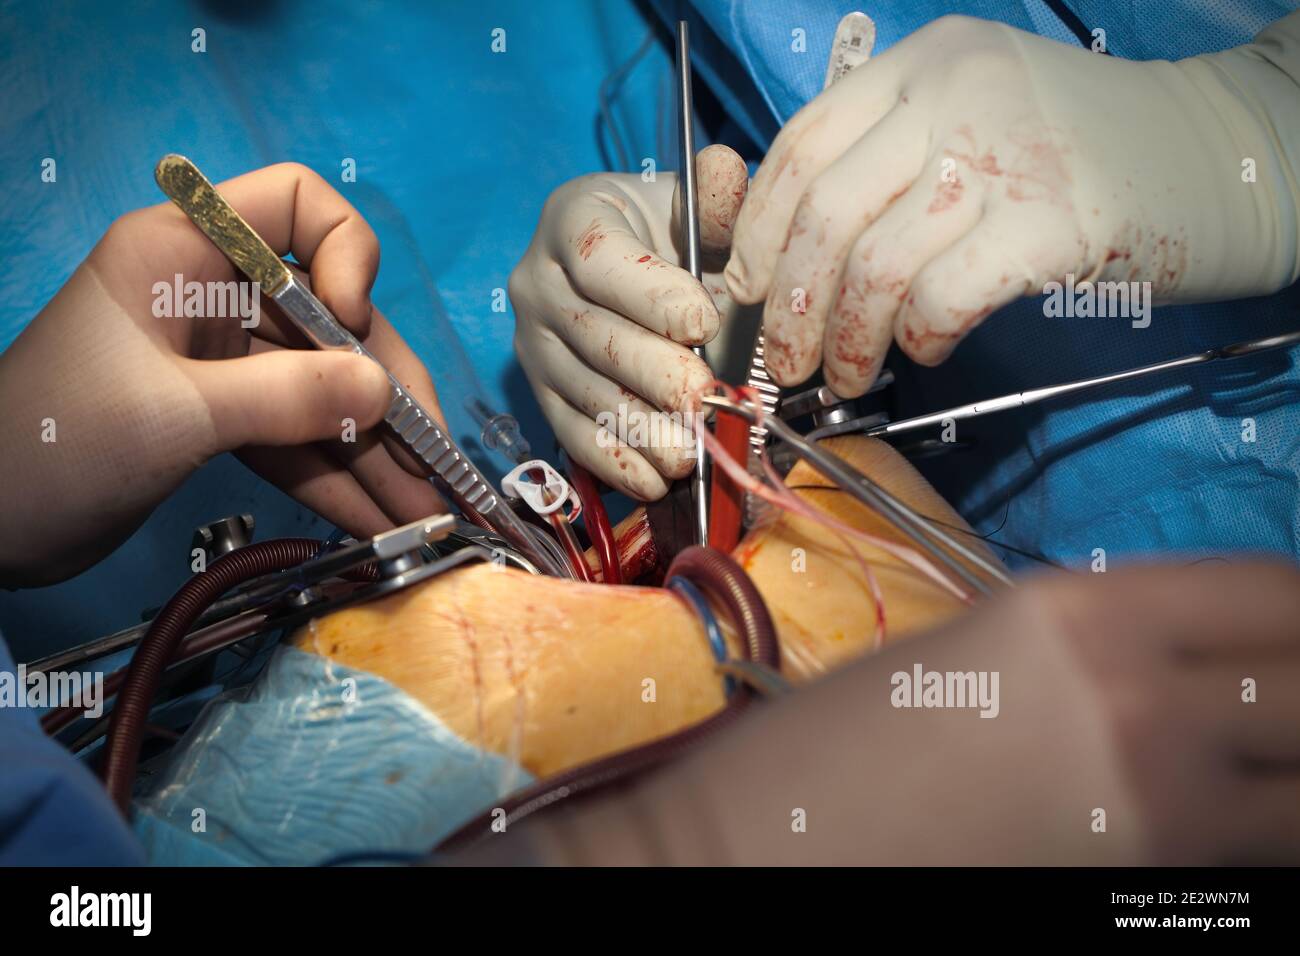 Arbeiten Chirurgen während des chirurgischen Eingriffs. Stockfoto